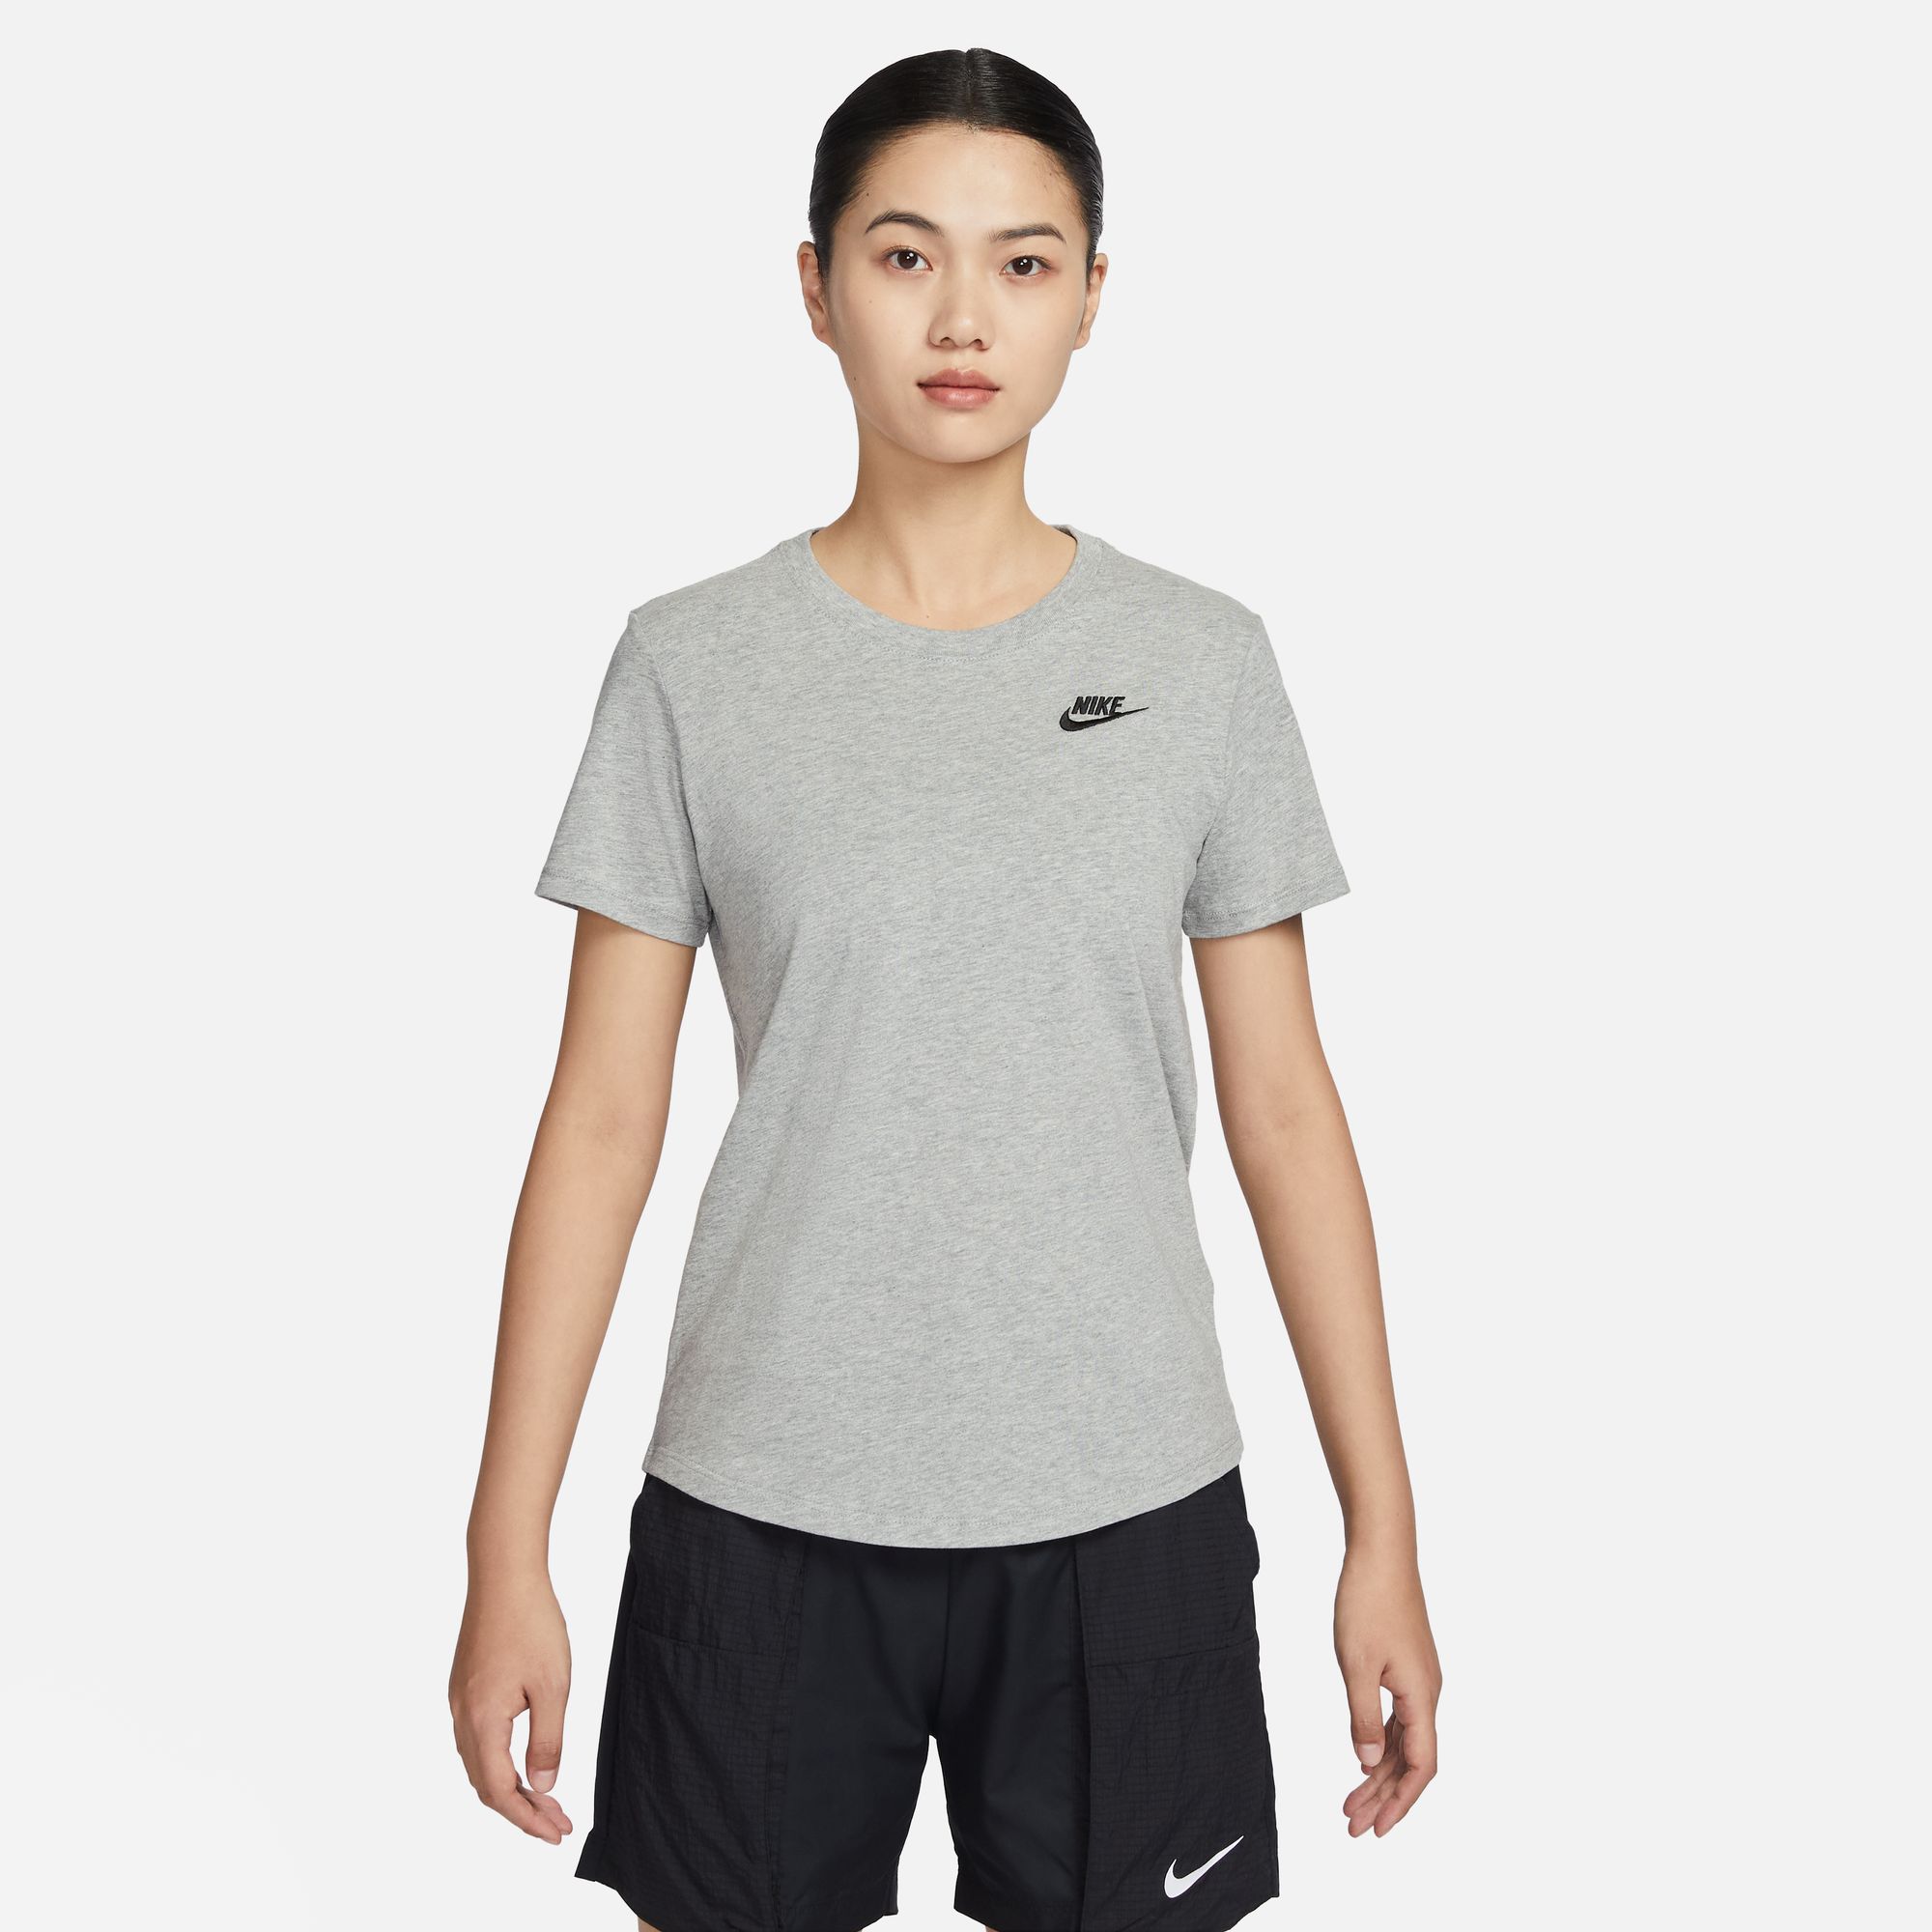 Jual Nike Women Running Dri-fit Essential Pant Celana Lari Wanita [dh6980- 010] Di Seller Nike Sports Official Store - Gudang Blibli